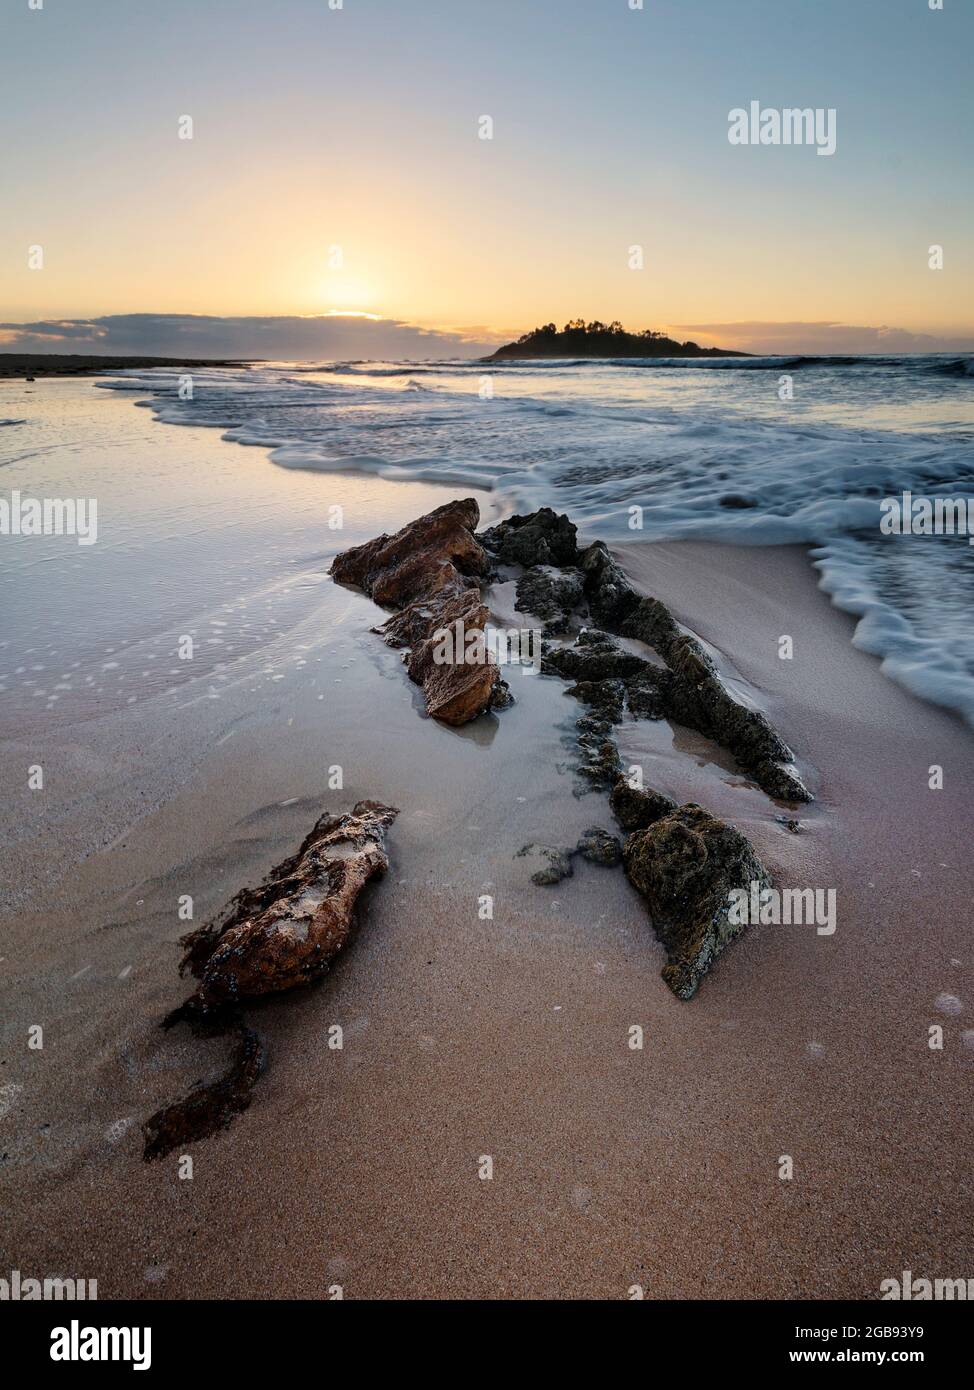 onde su una spiaggia rocciosa all'alba Foto Stock